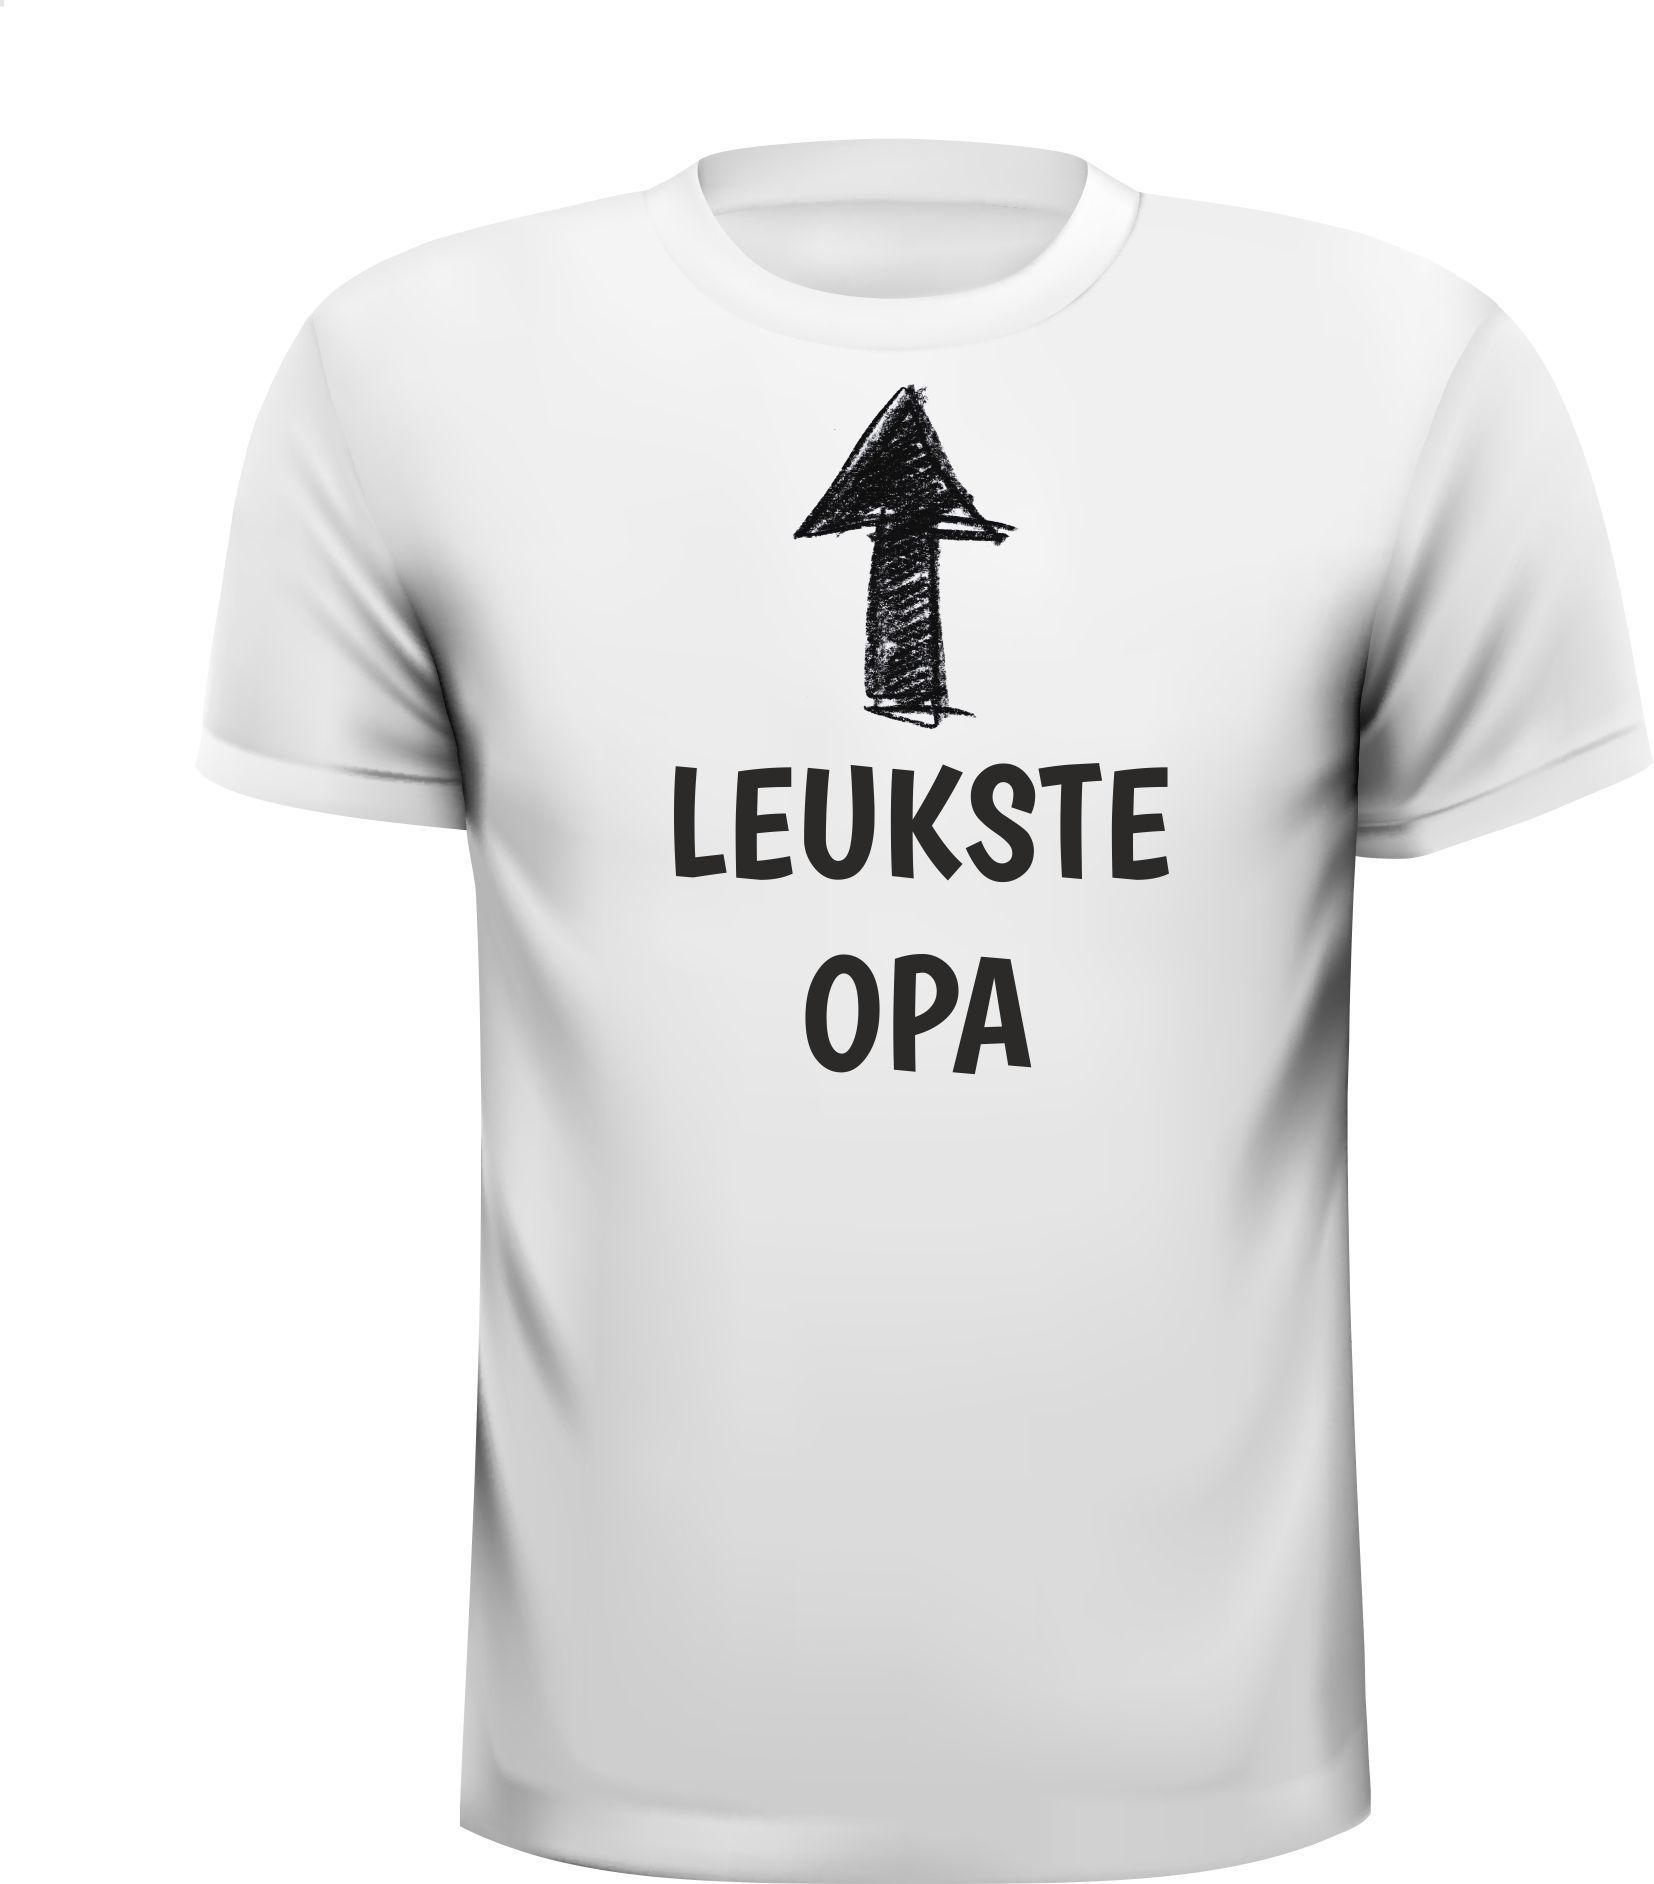 T-shirt voor de leukste opa van Nederland